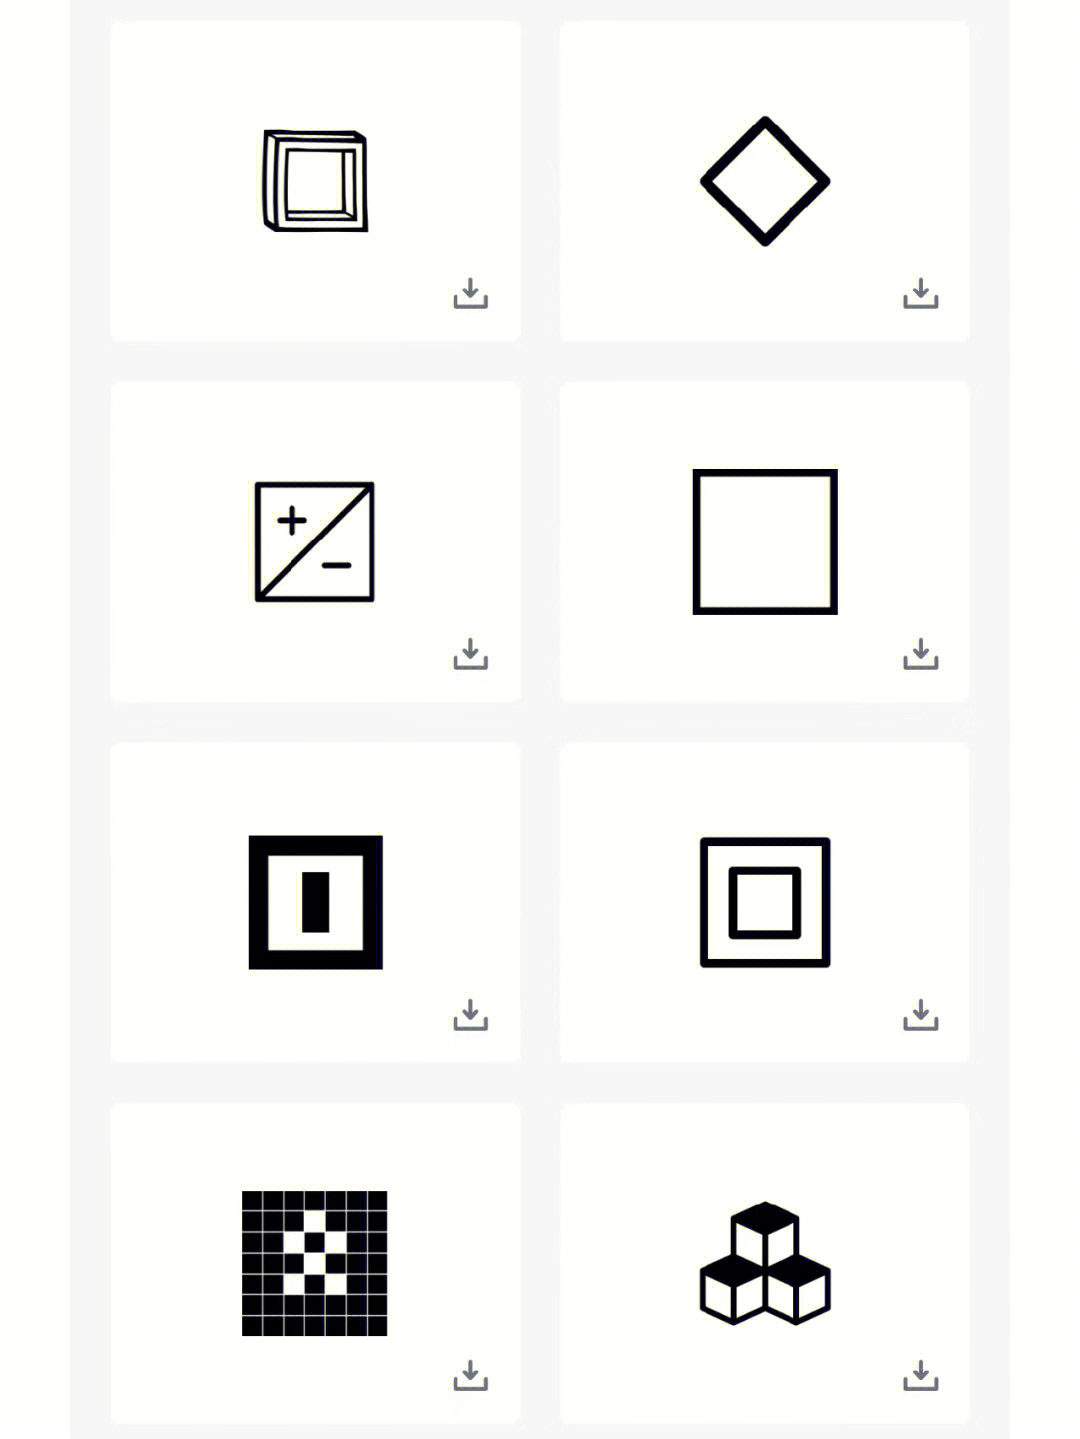 分享一组正方形的图标logo设计素材